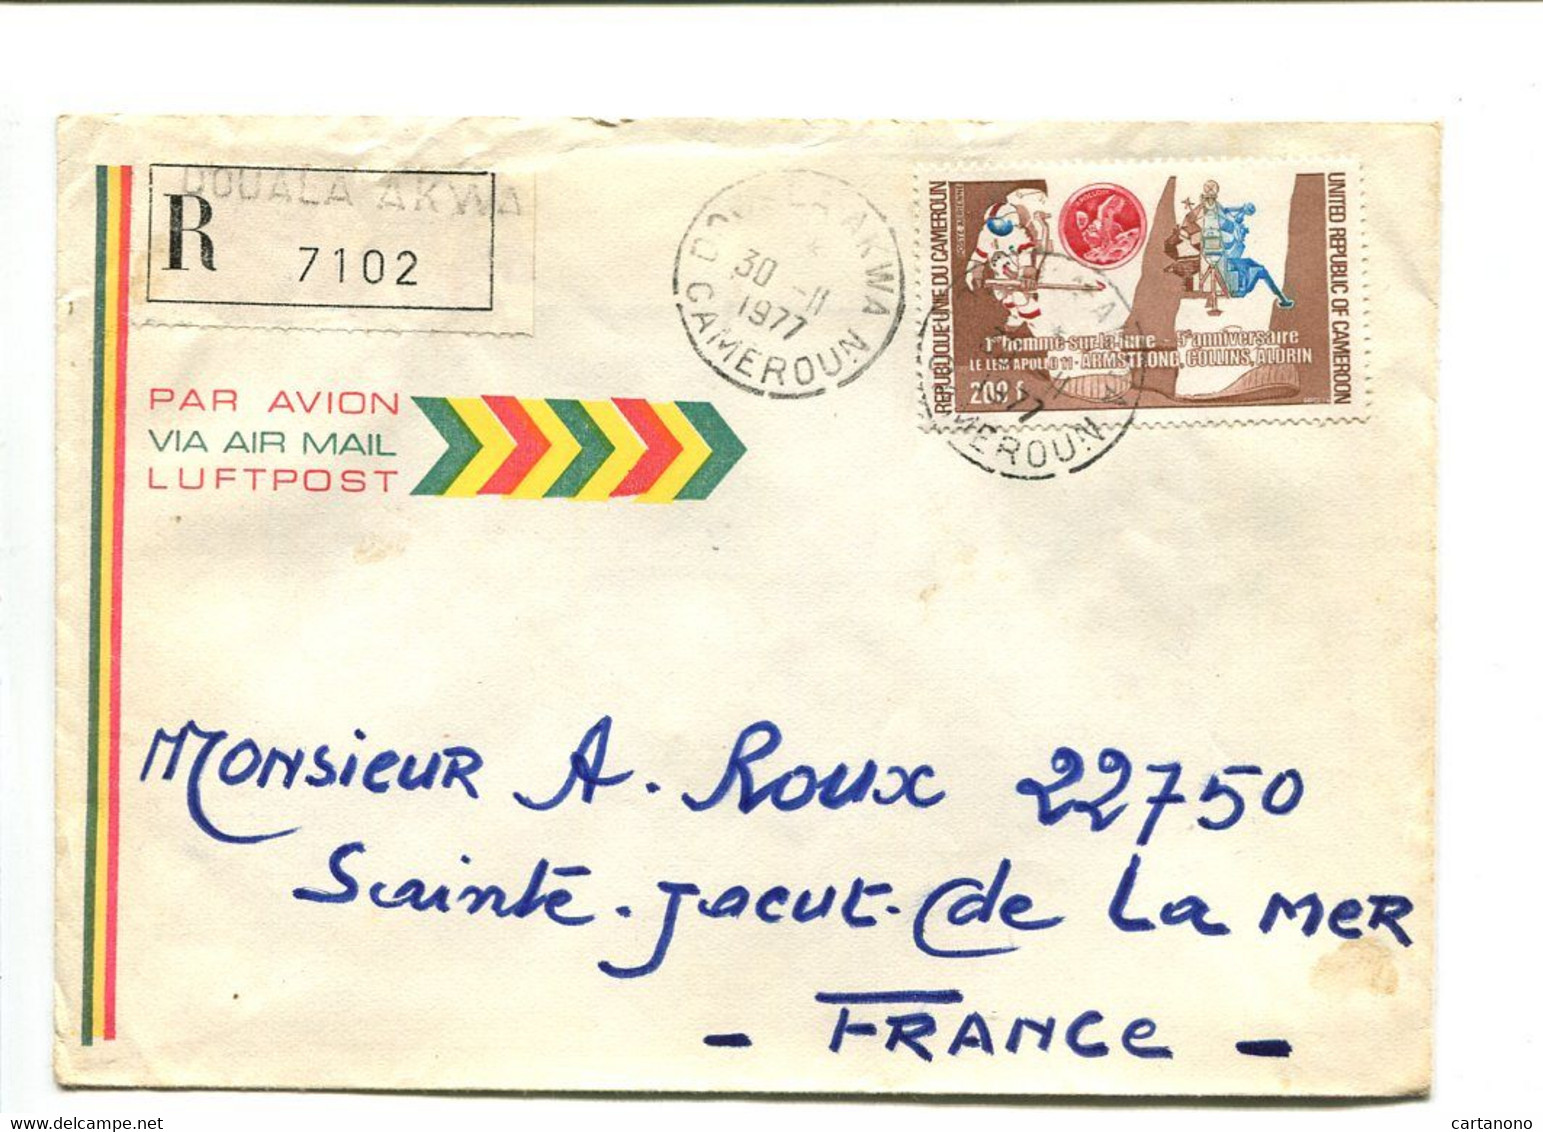 CAMEROUN Douala Akwa 1977 -  Affranchissement Seul Sur Lettre Recommandée Par Avion - Astronautes / Lune - Cameroon (1960-...)